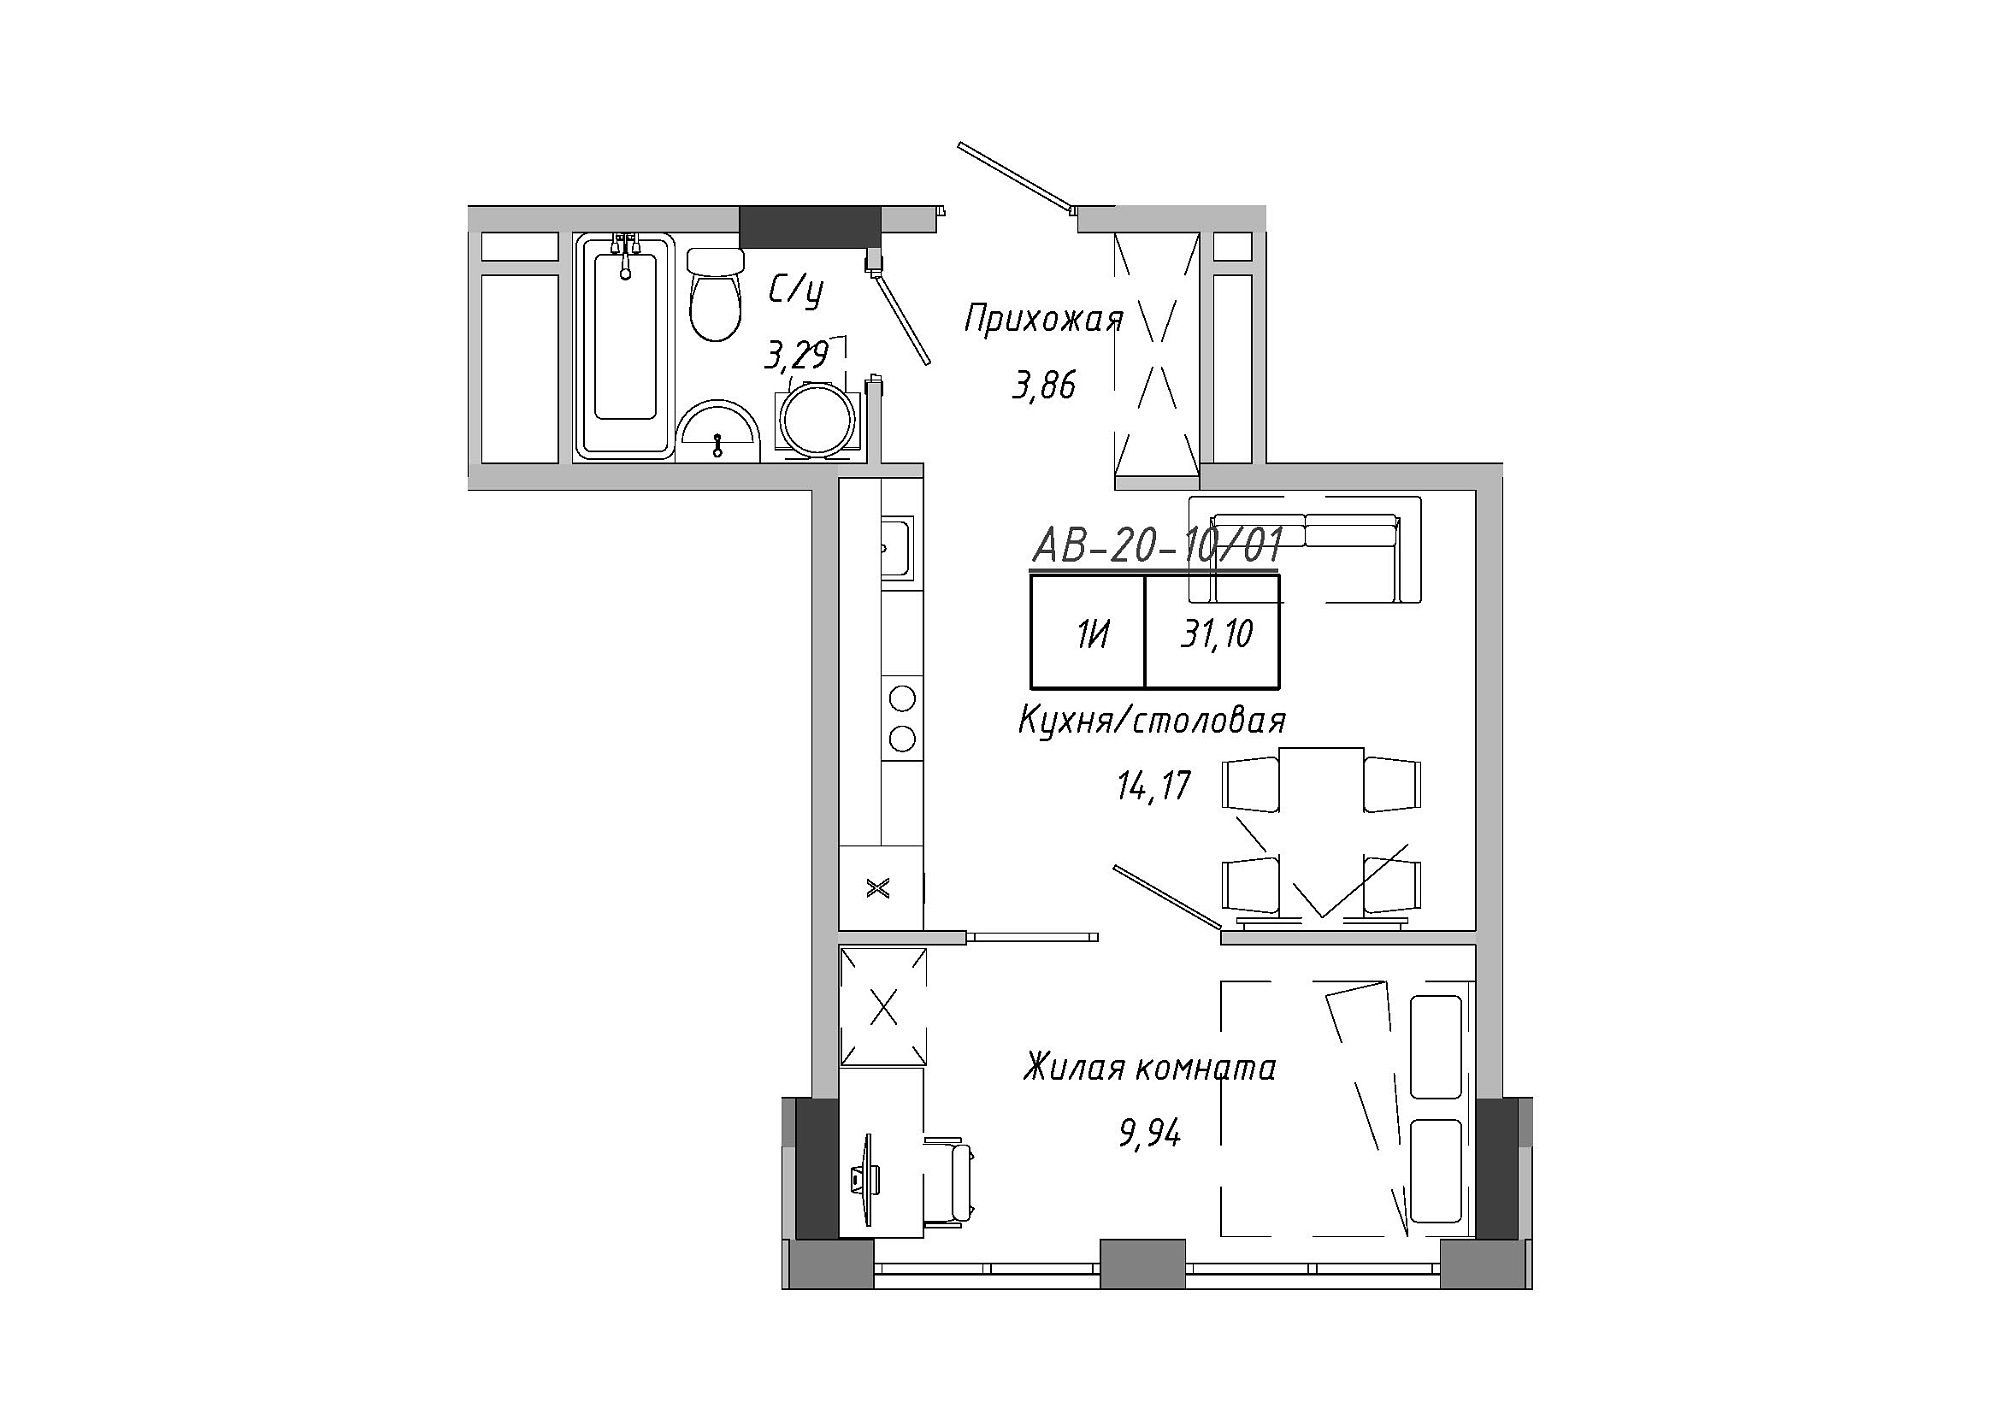 Планировка 1-к квартира площей 30.28м2, AB-20-10/00001.